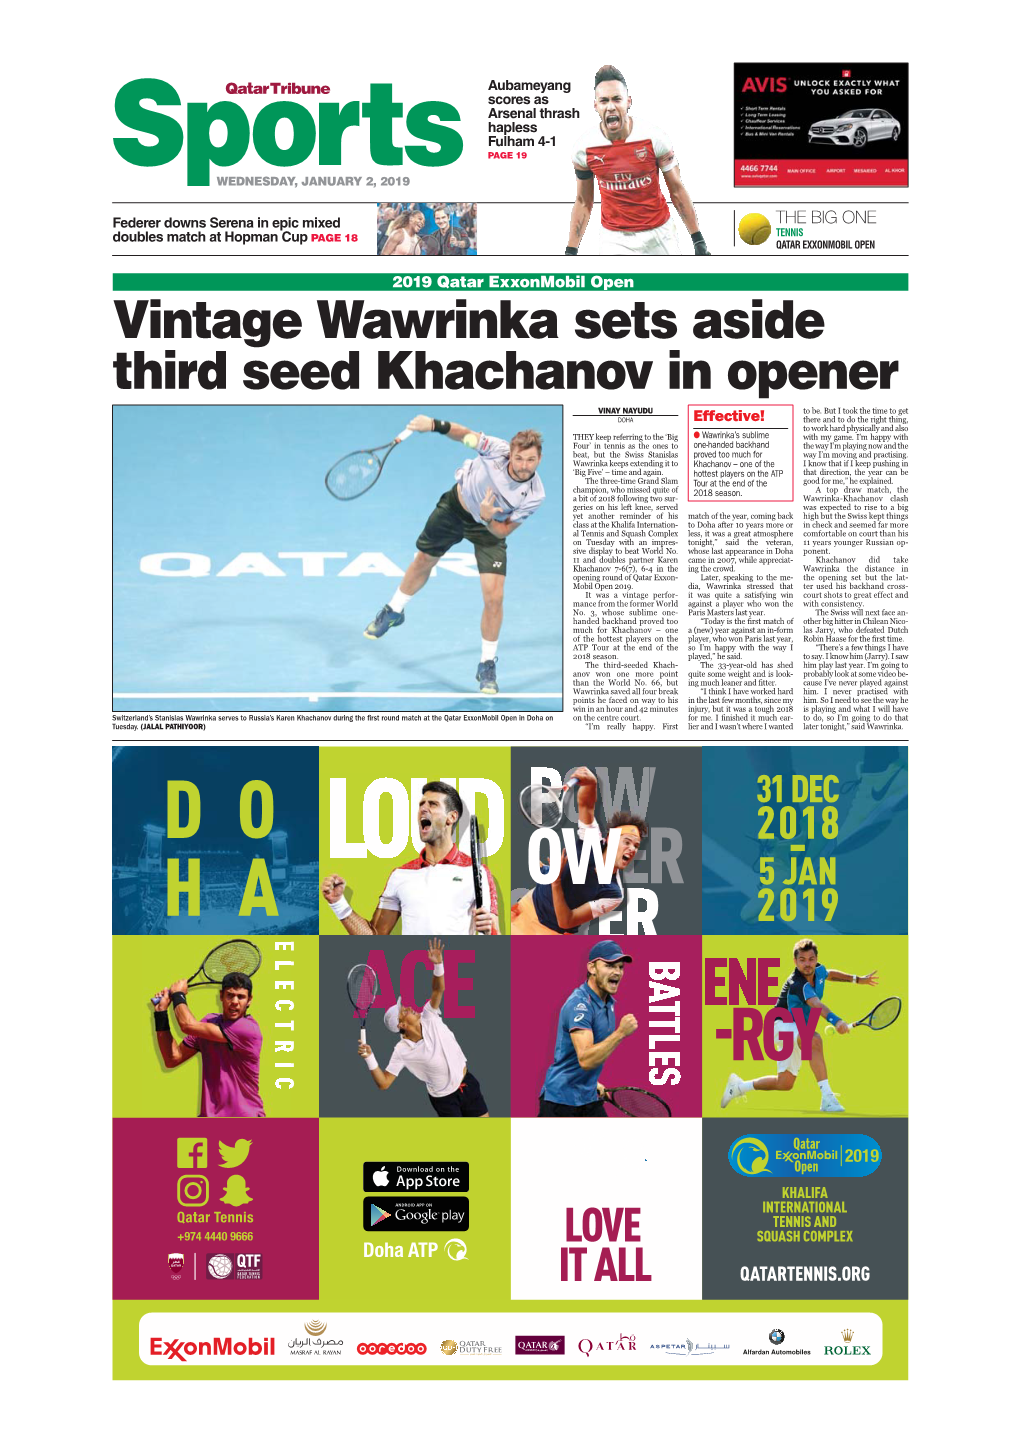 Vintage Wawrinka Sets Aside Third Seed Khachanov in Opener